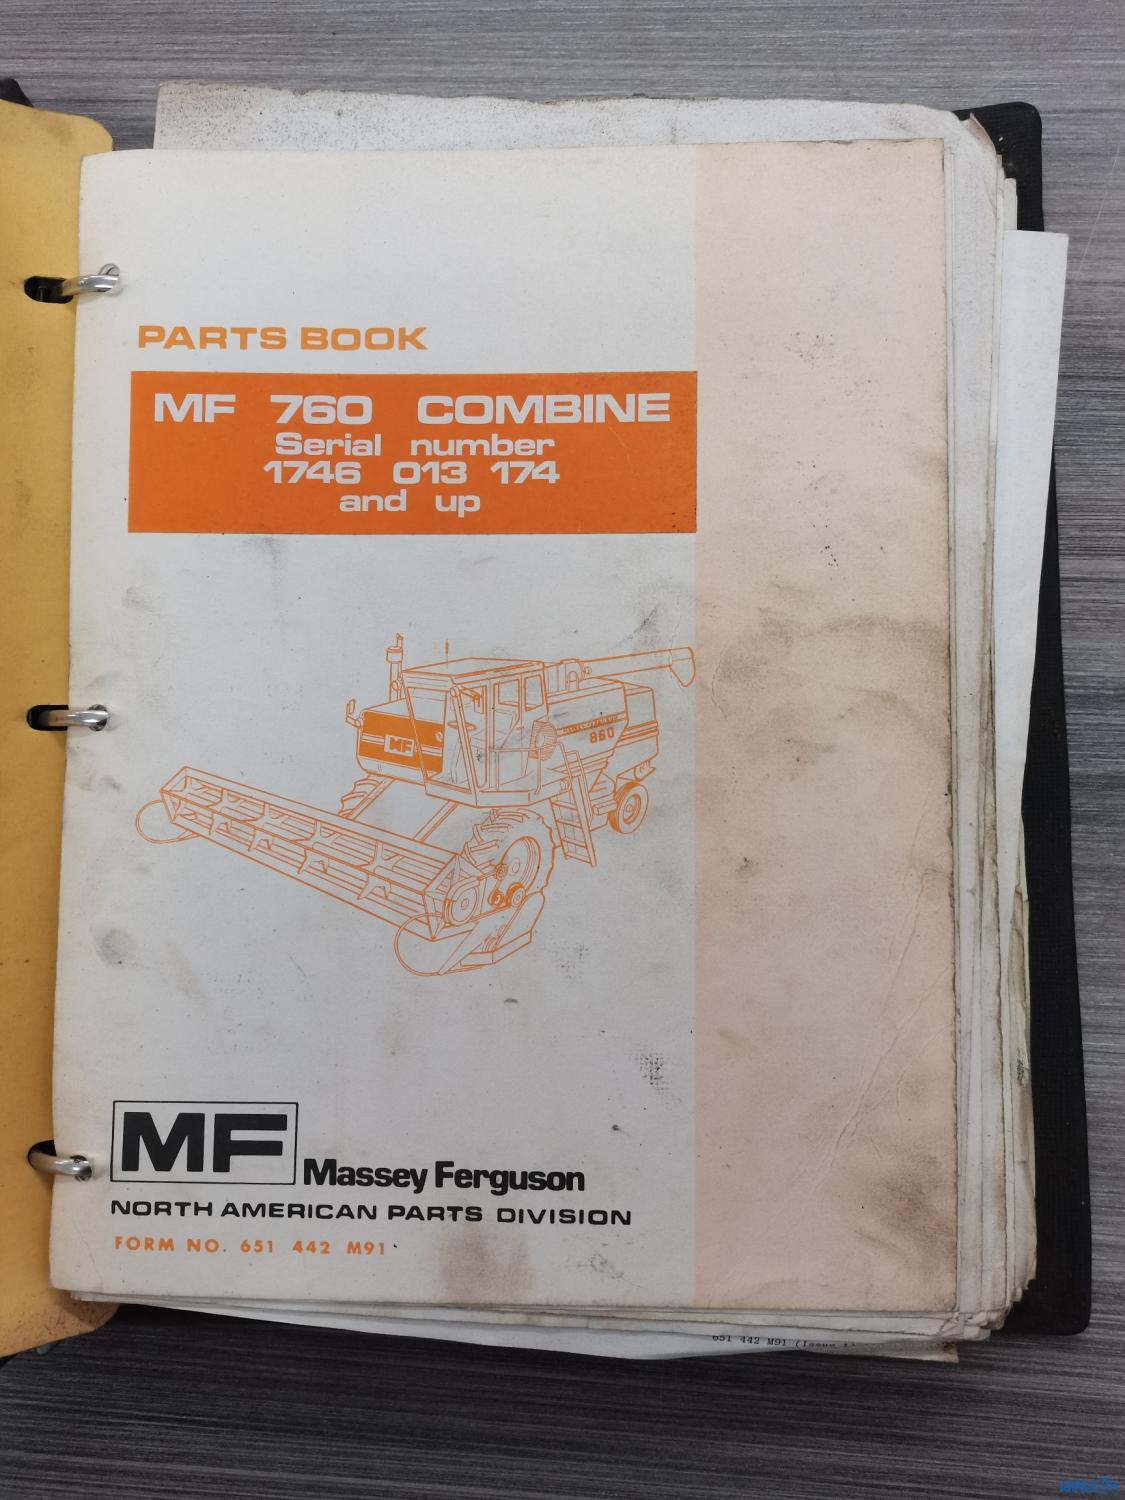 Catalogue de pièces détachées pour moissonneuse Massey-Ferguson 760